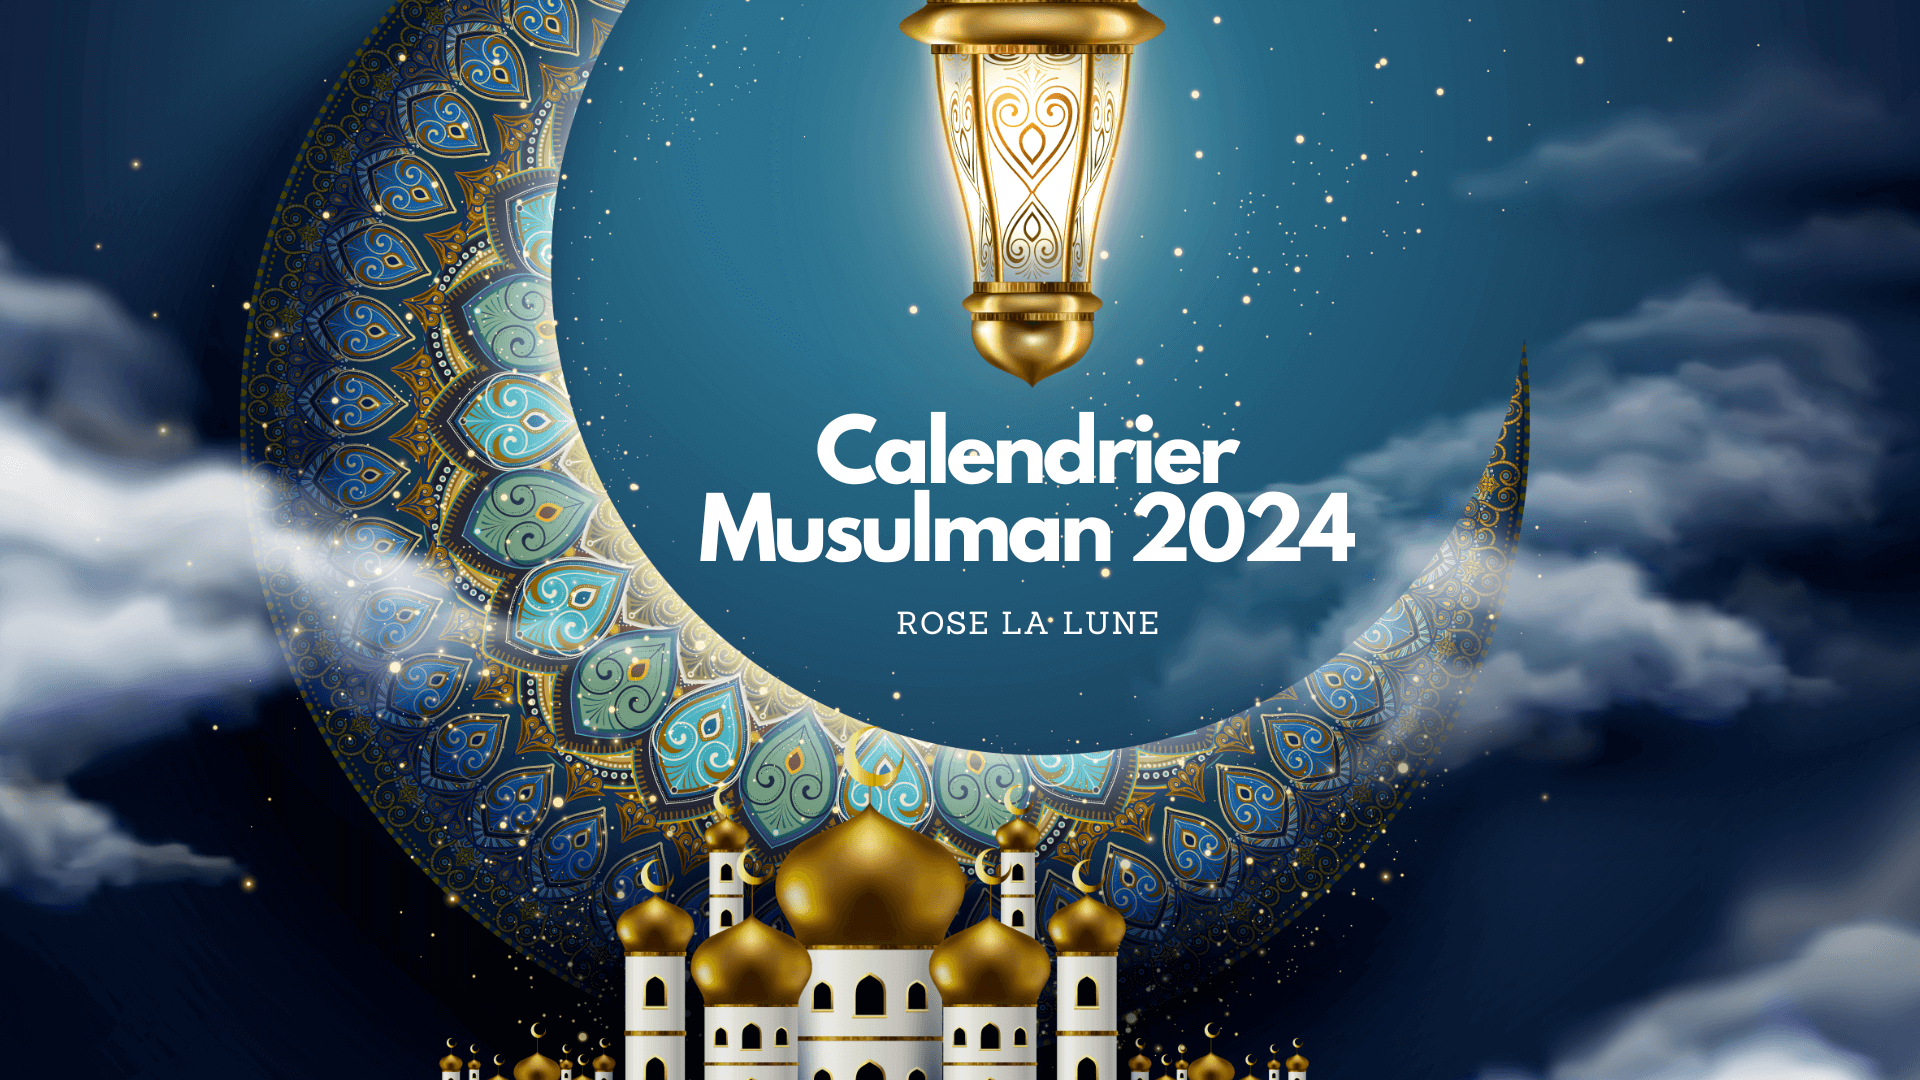 Calendrier Musulman 2024: le rôle de la Lune – Rose La Lune